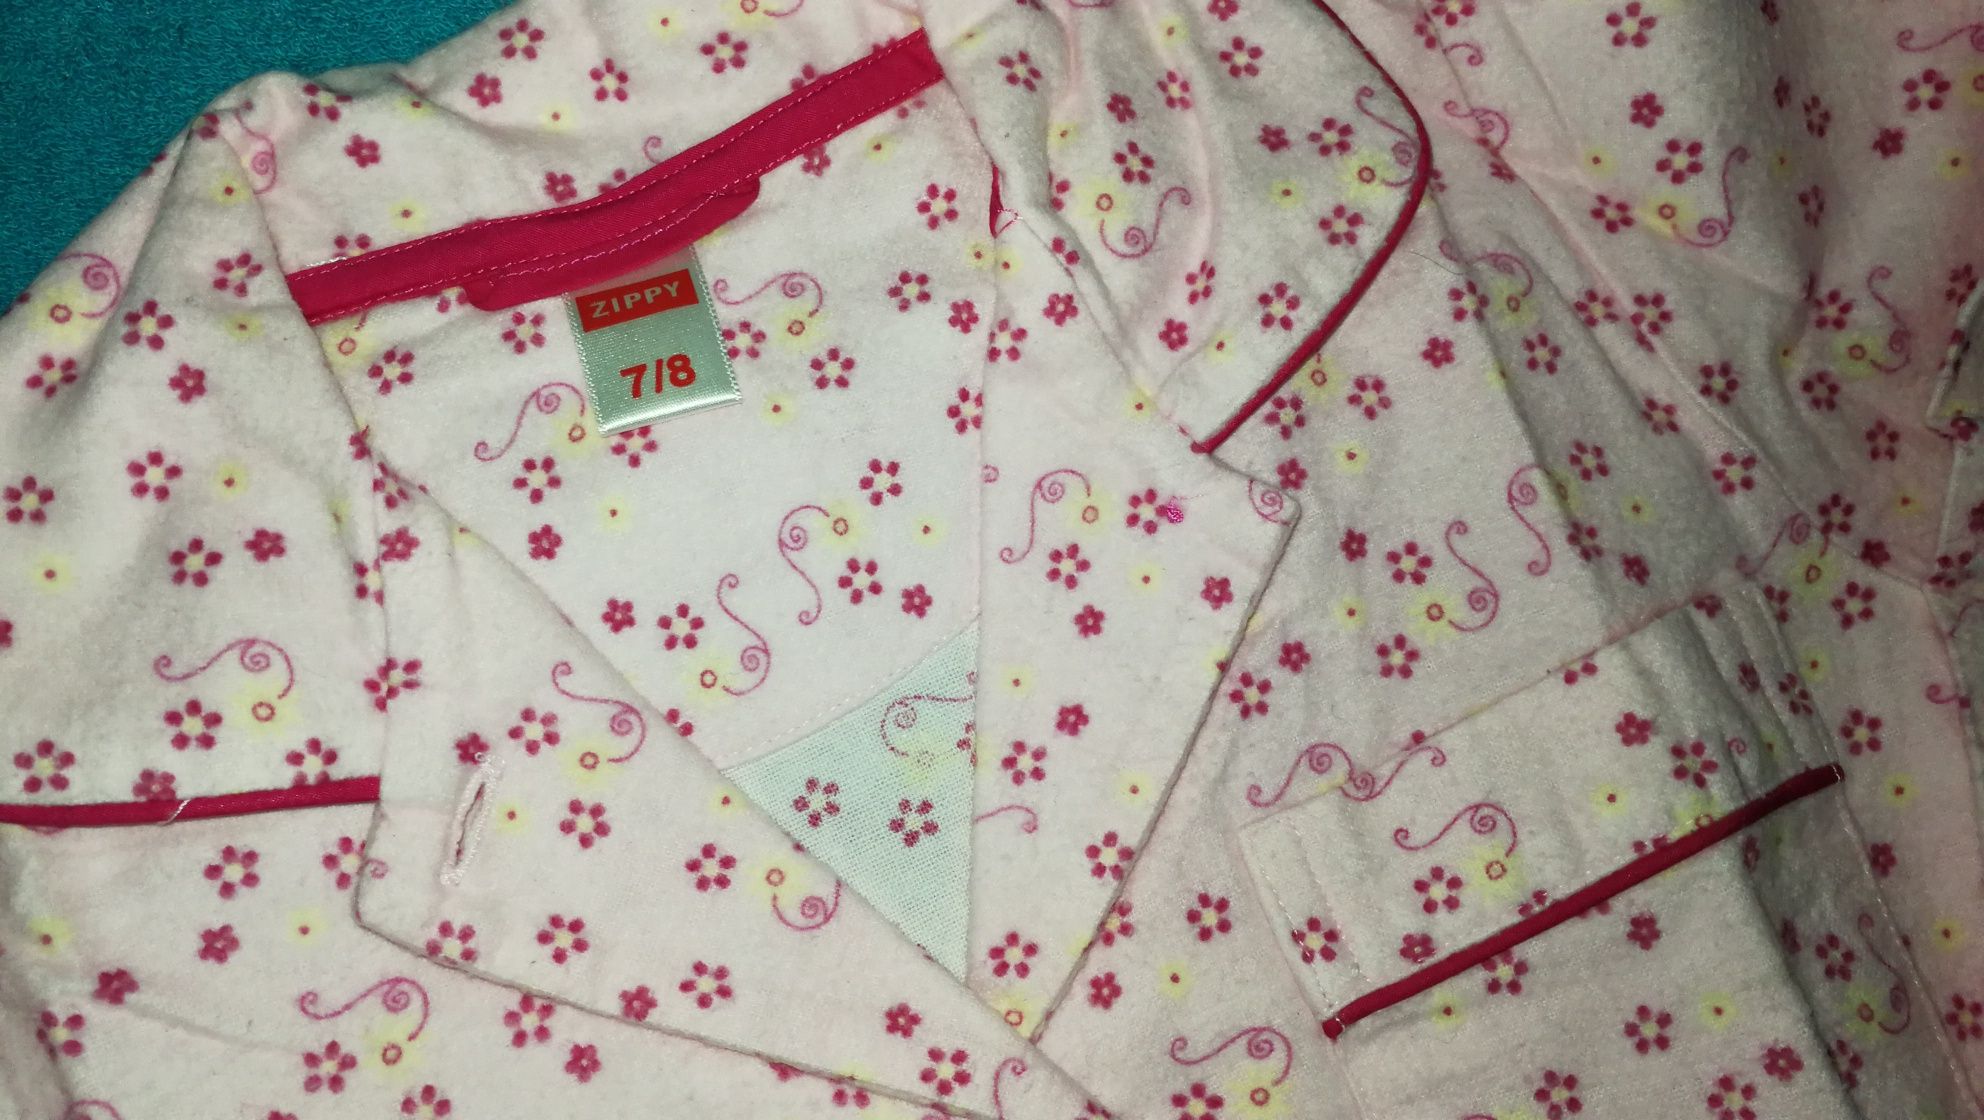 QUENTINHOS Pijama Flanela+ camisolas Interiores Menina 6-8 Anos Zippy